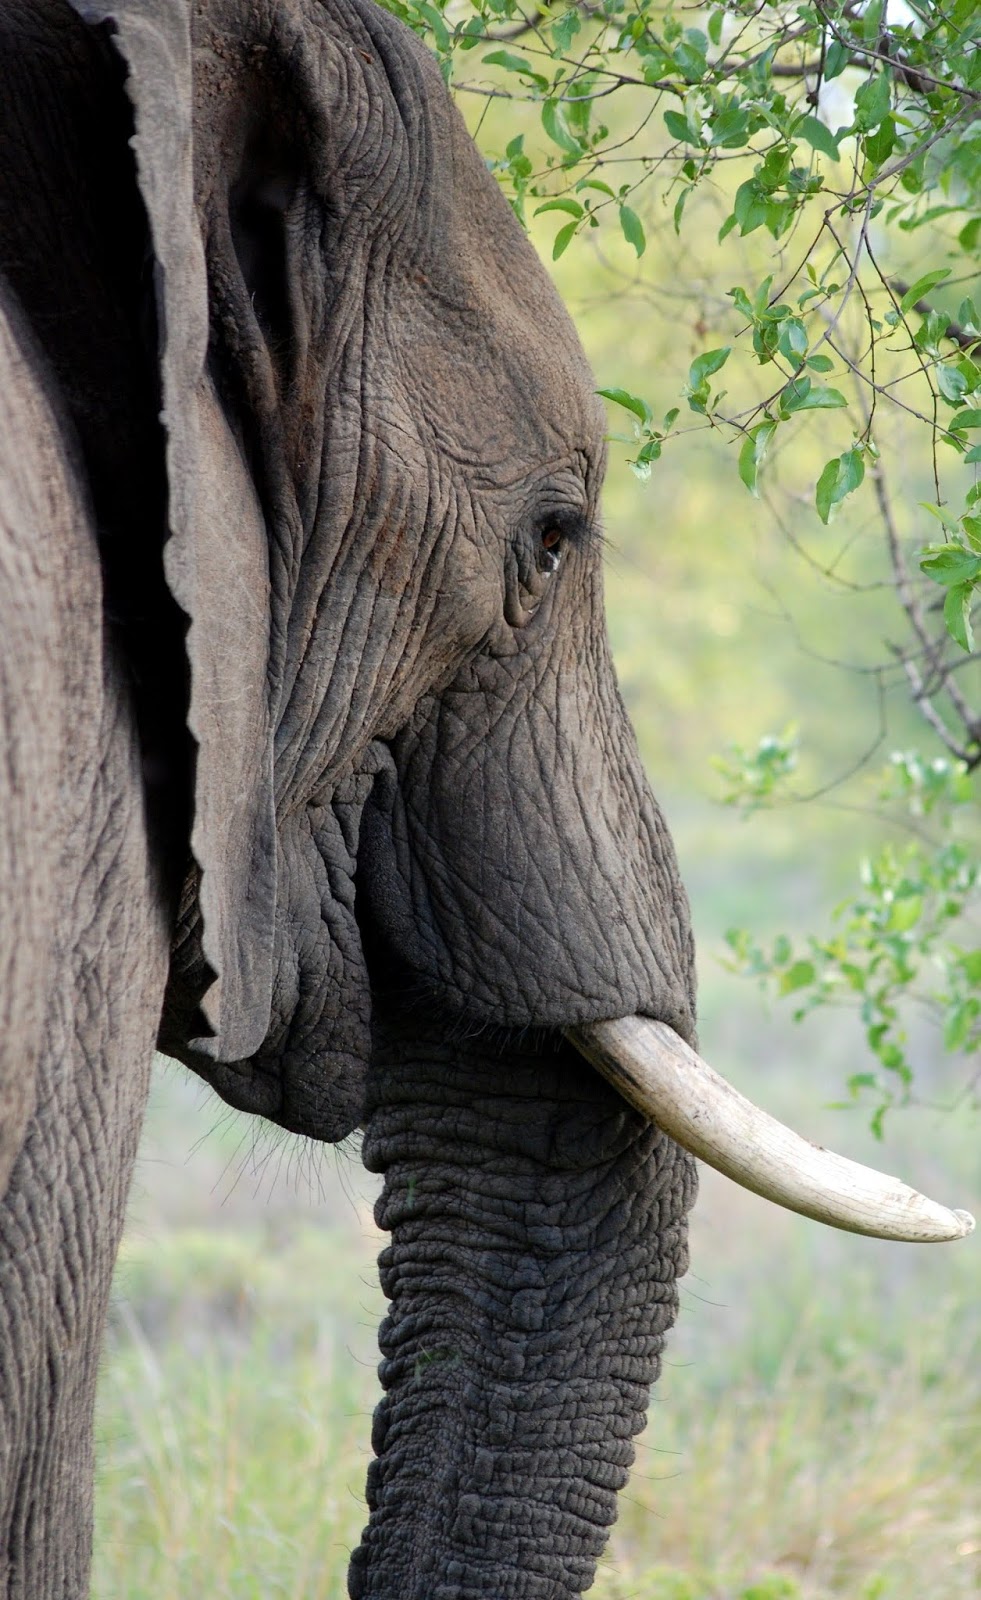 An elephant up close.